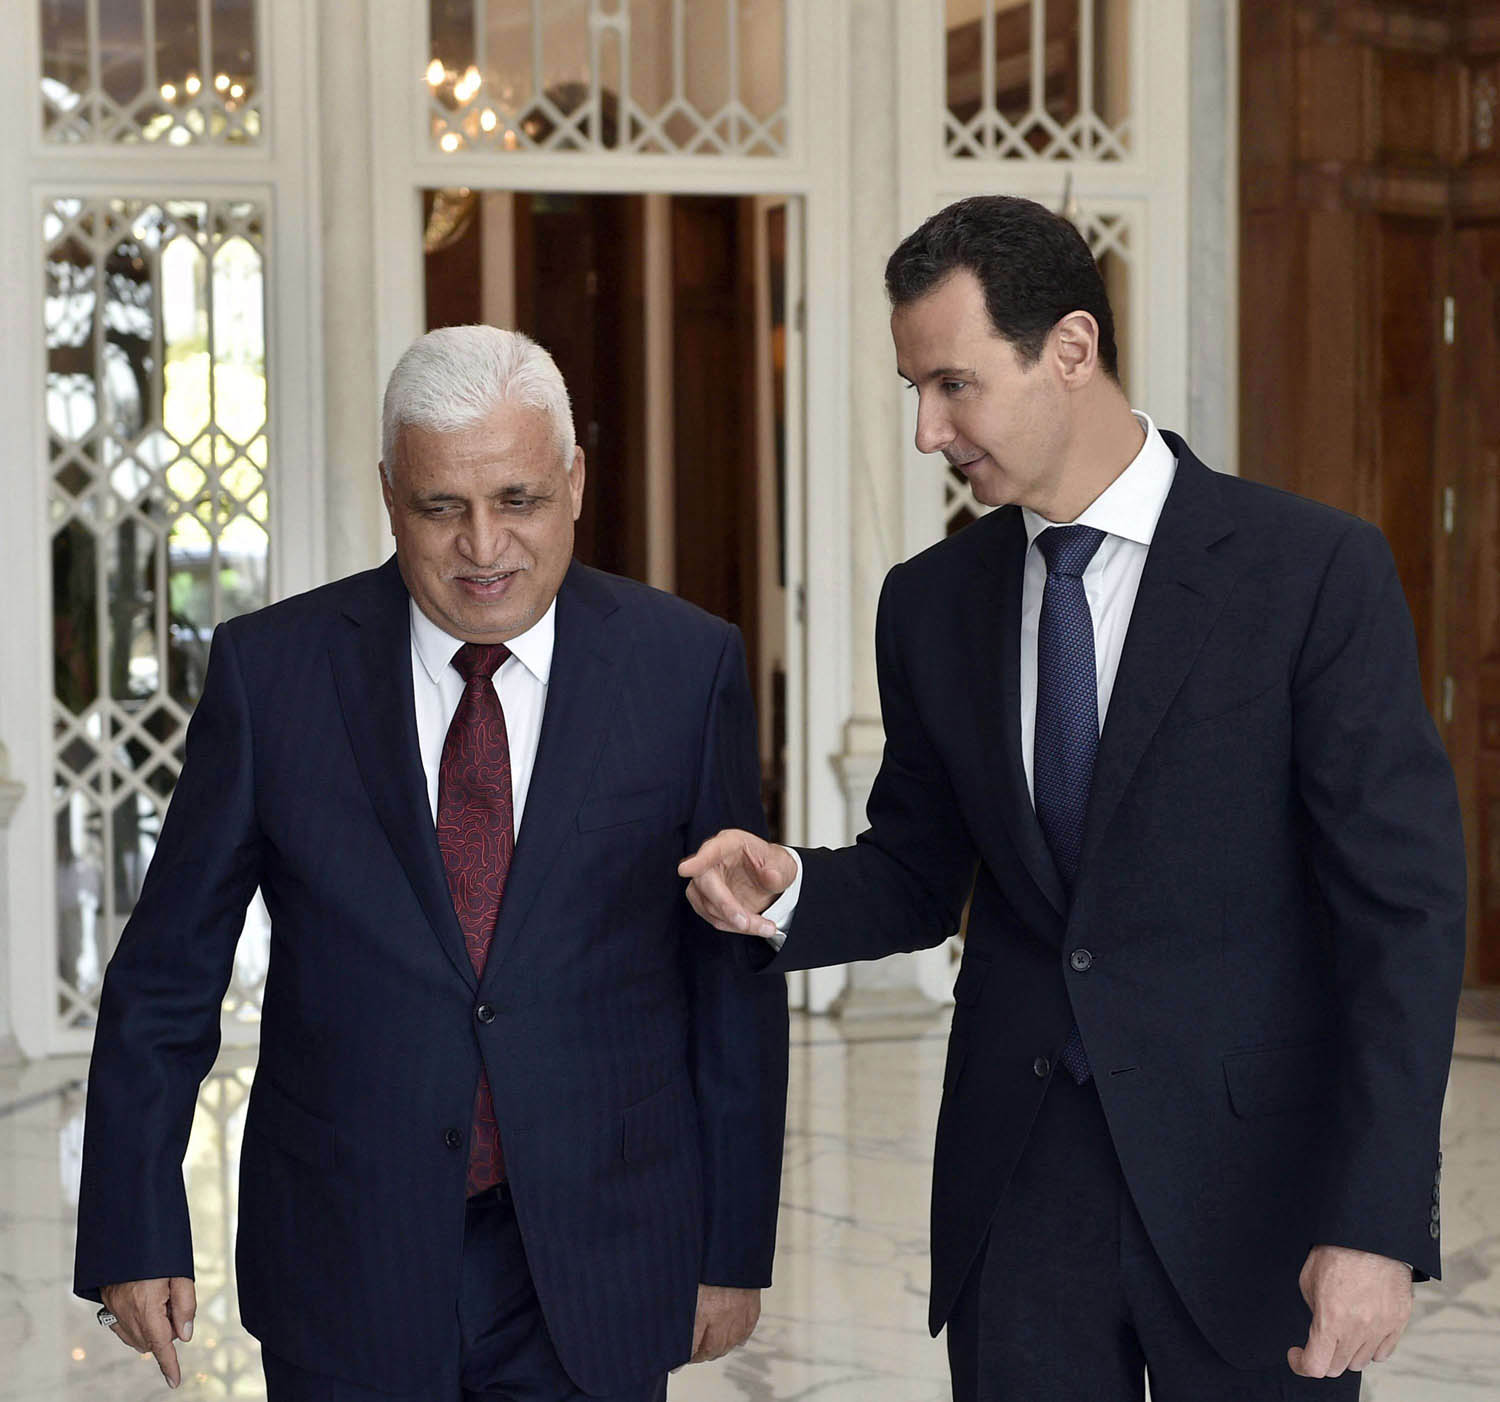 الرئيس السوري بشار الأسد يستقبل رئيس الحشد الشعبي العراقي فالح الفياض